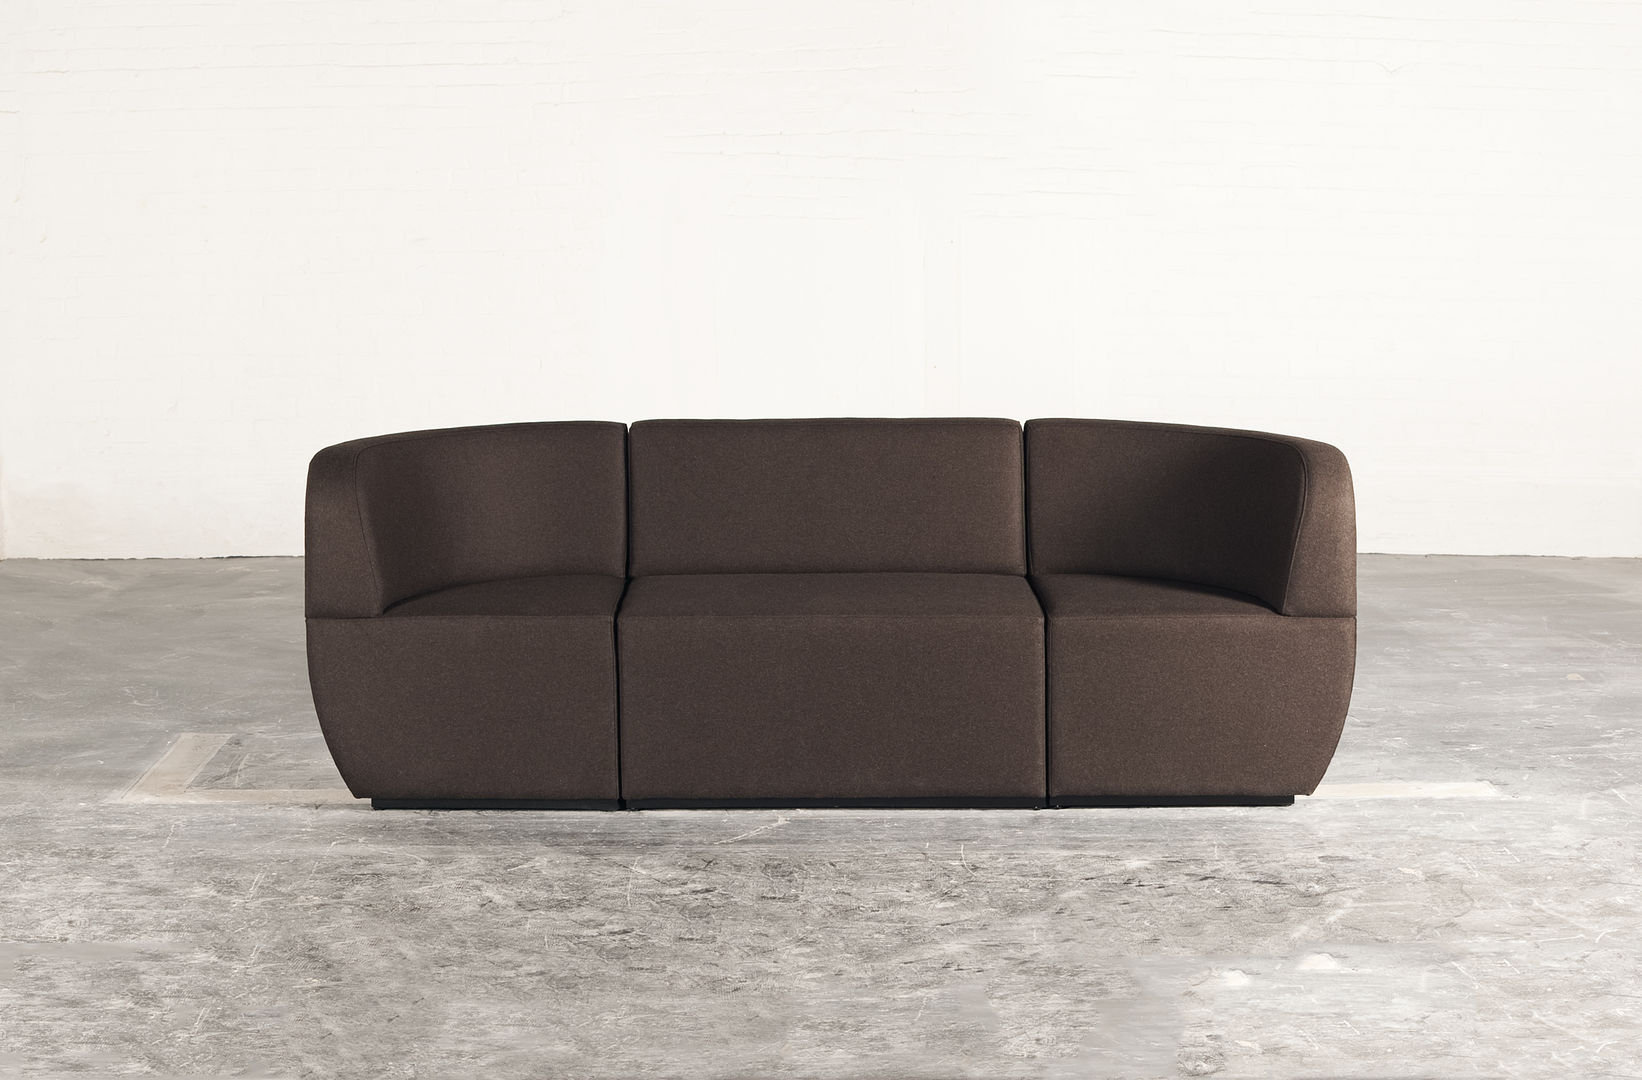 Cosmo - 3 seater couch Studio Lulo Гостиная в стиле модерн Диваны и кресла